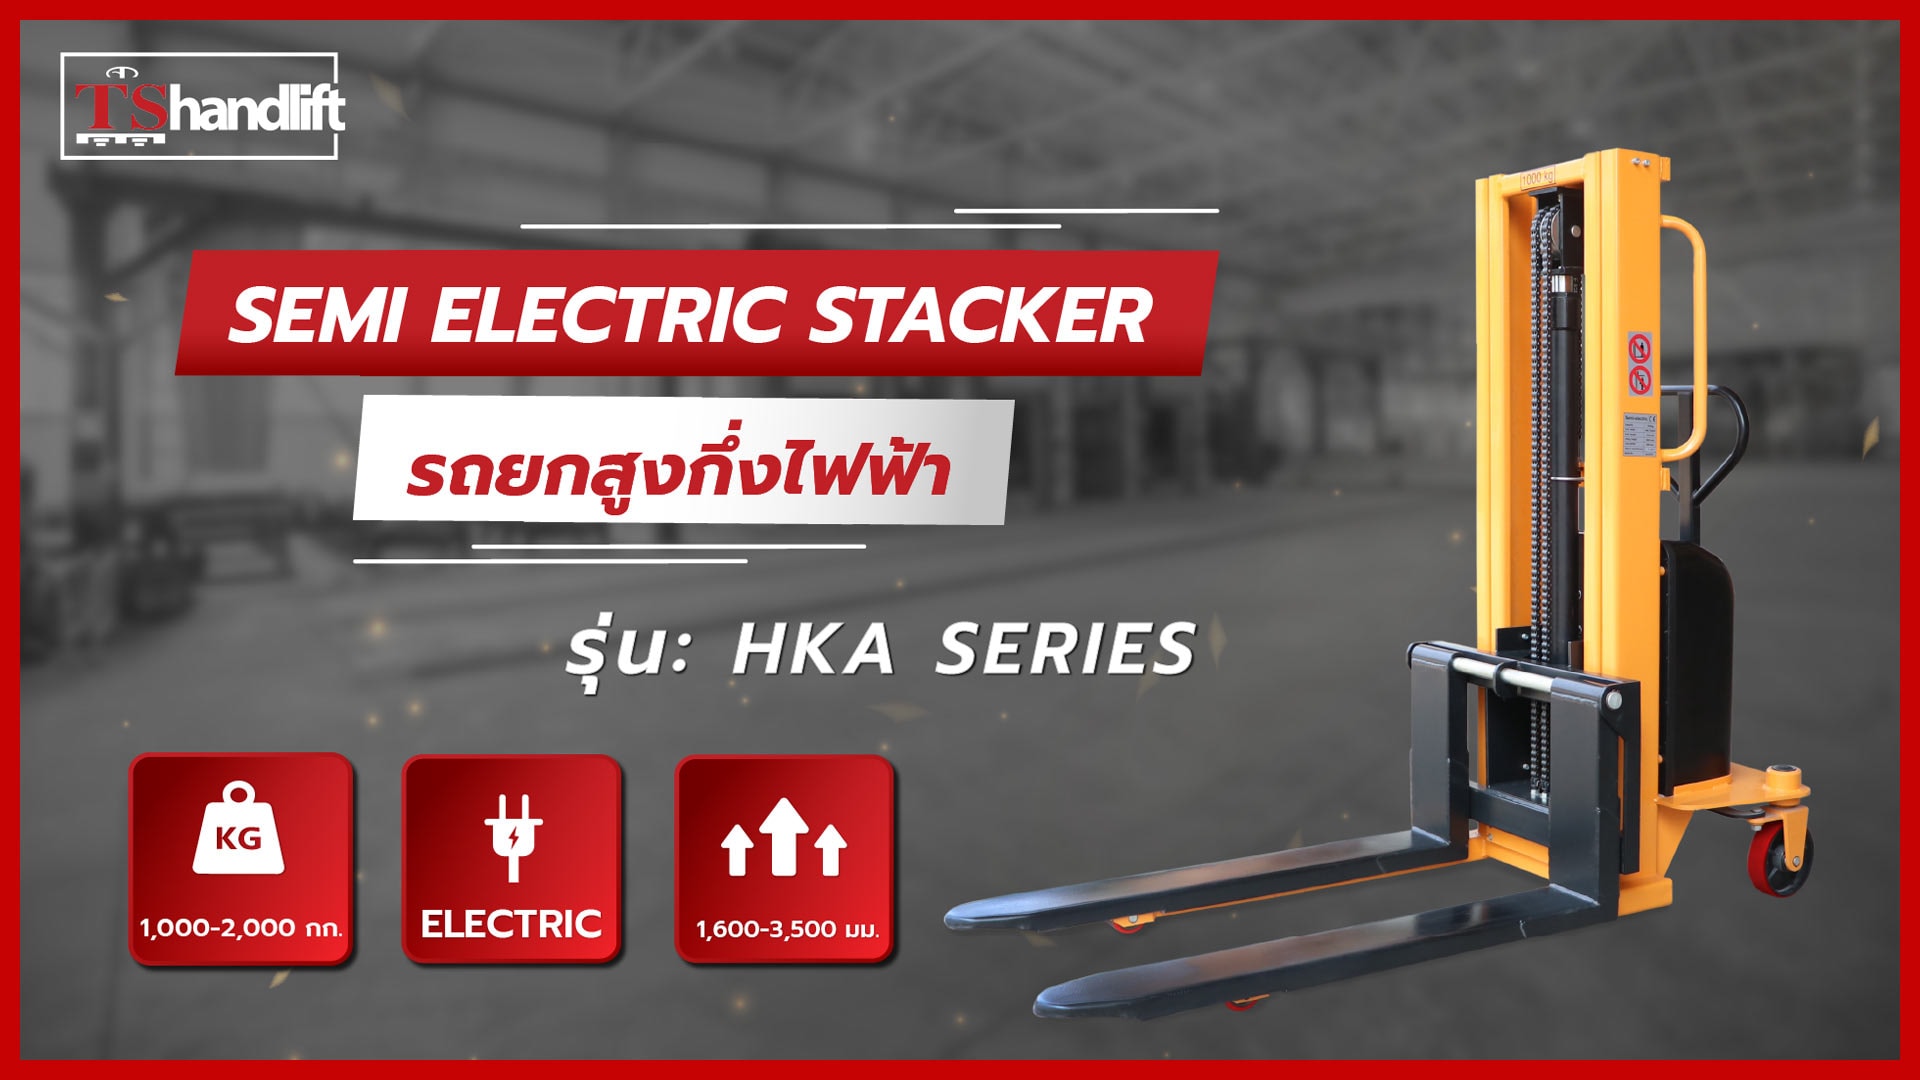 ปกวิดีโอ youtube แนะนำรถยกสูงกึ่งไฟฟ้า รุ่น hka series